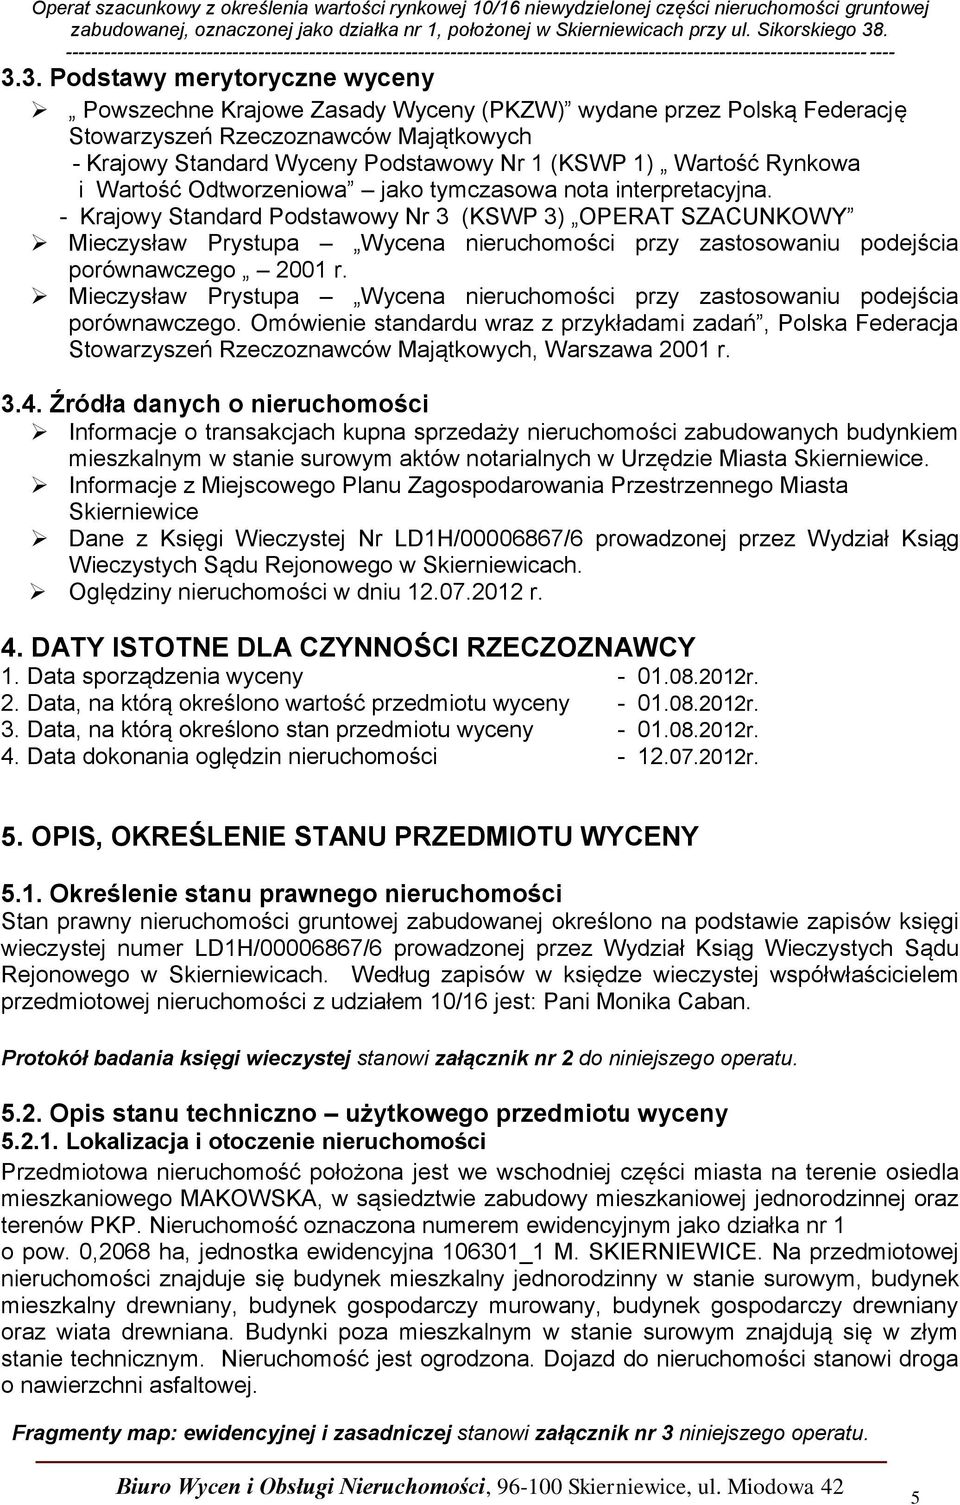 - Krajowy Standard Podstawowy Nr 3 (KSWP 3) OPERAT SZACUNKOWY Mieczysław Prystupa Wycena nieruchomości przy zastosowaniu podejścia porównawczego 2001 r.